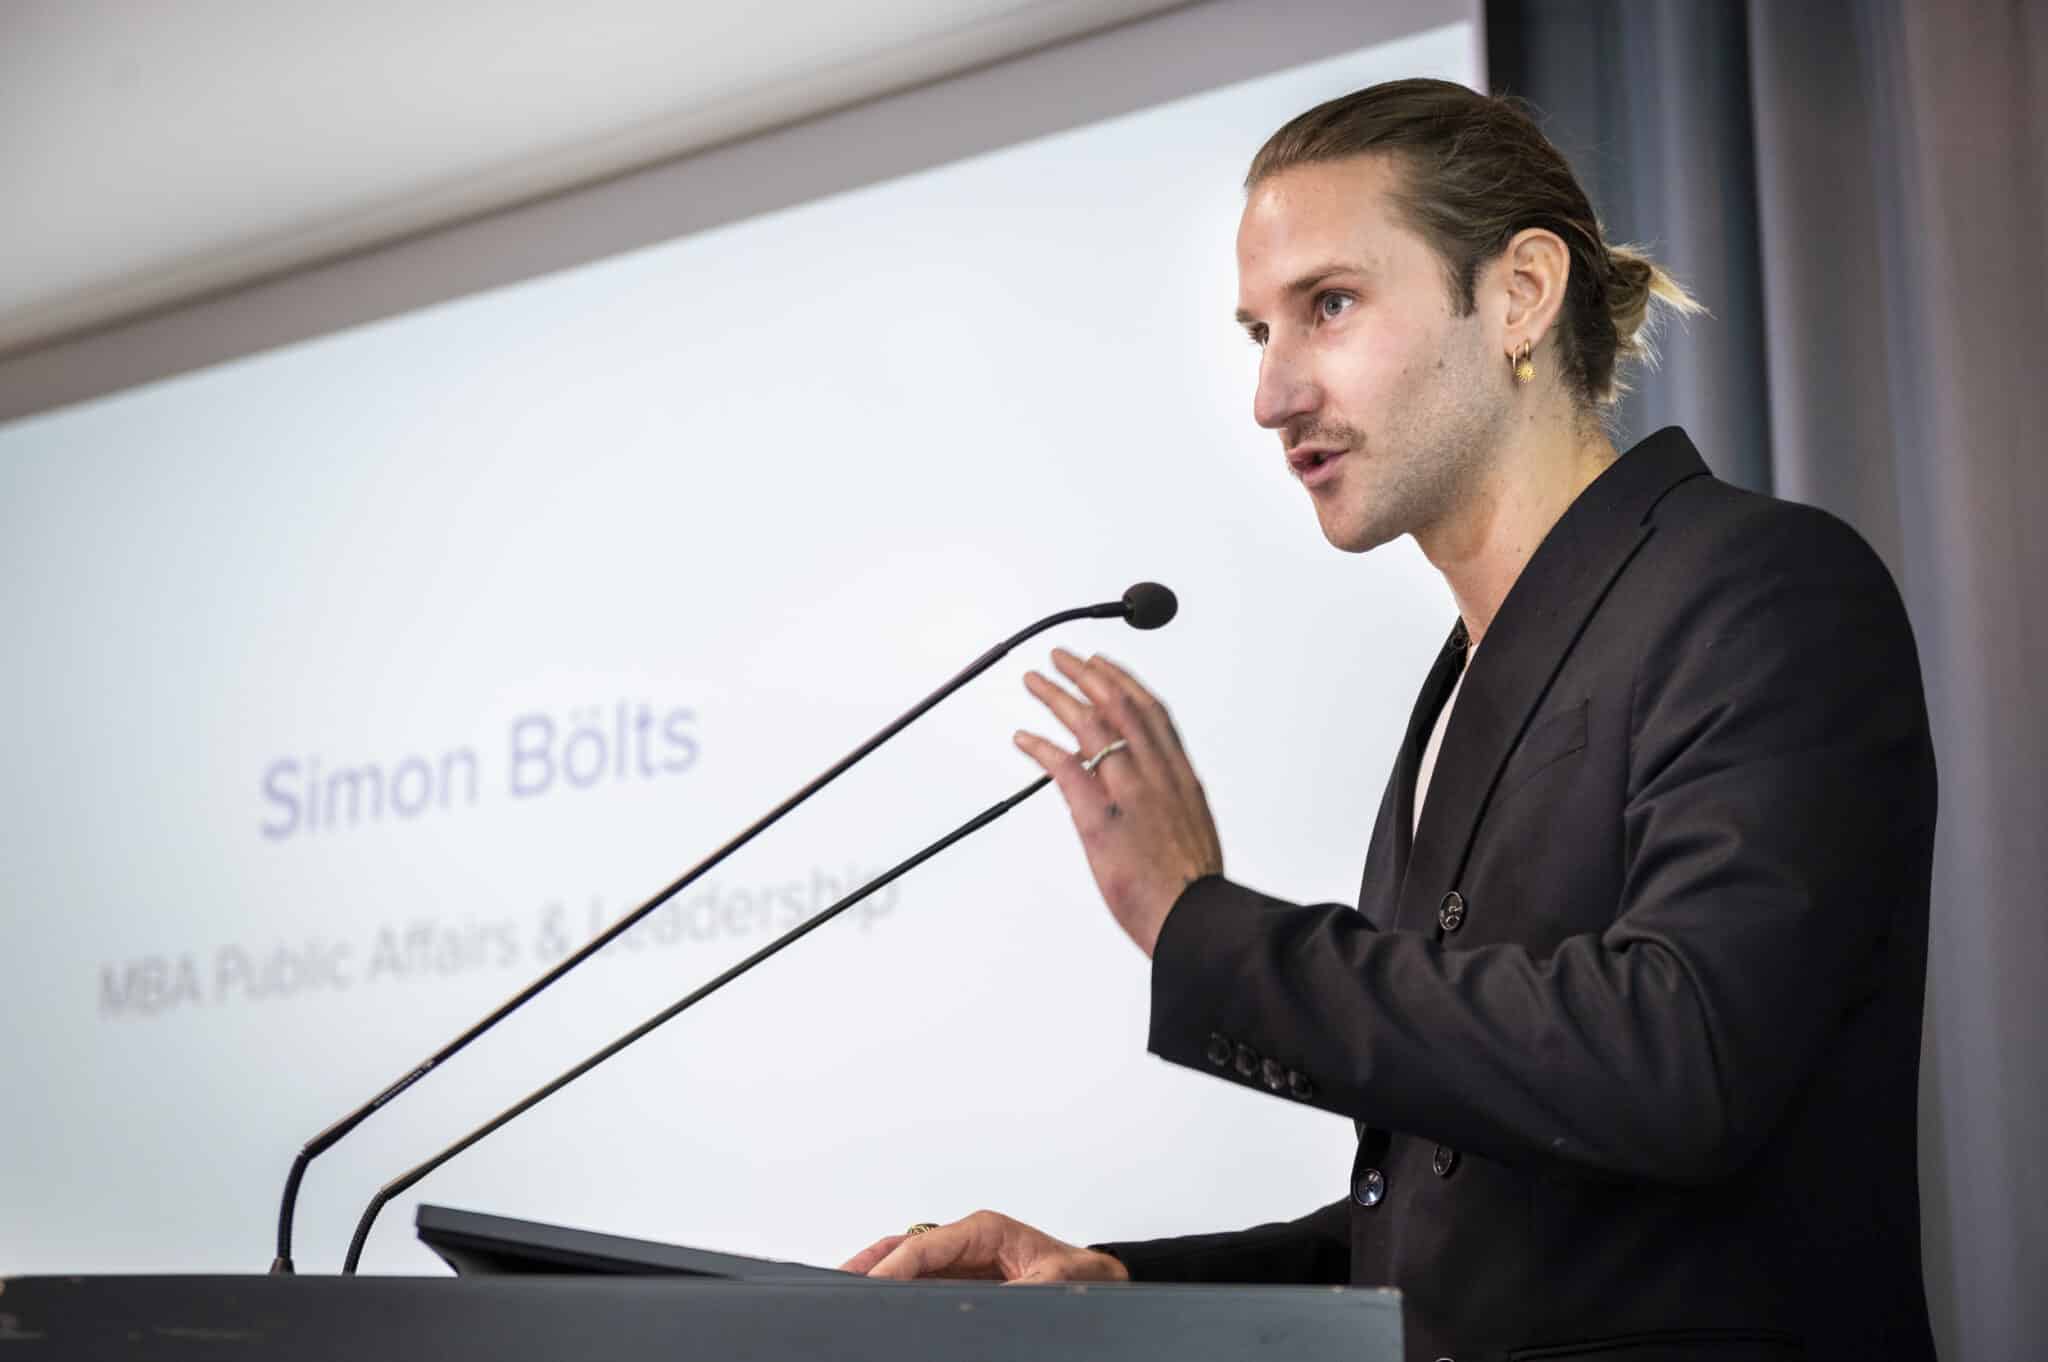 "Unmute yourself": Simon Bölts bei seiner Rede als Kurssprecher der MBAs Public Affairs und Communication. (Foto: Sebastian Höhn)